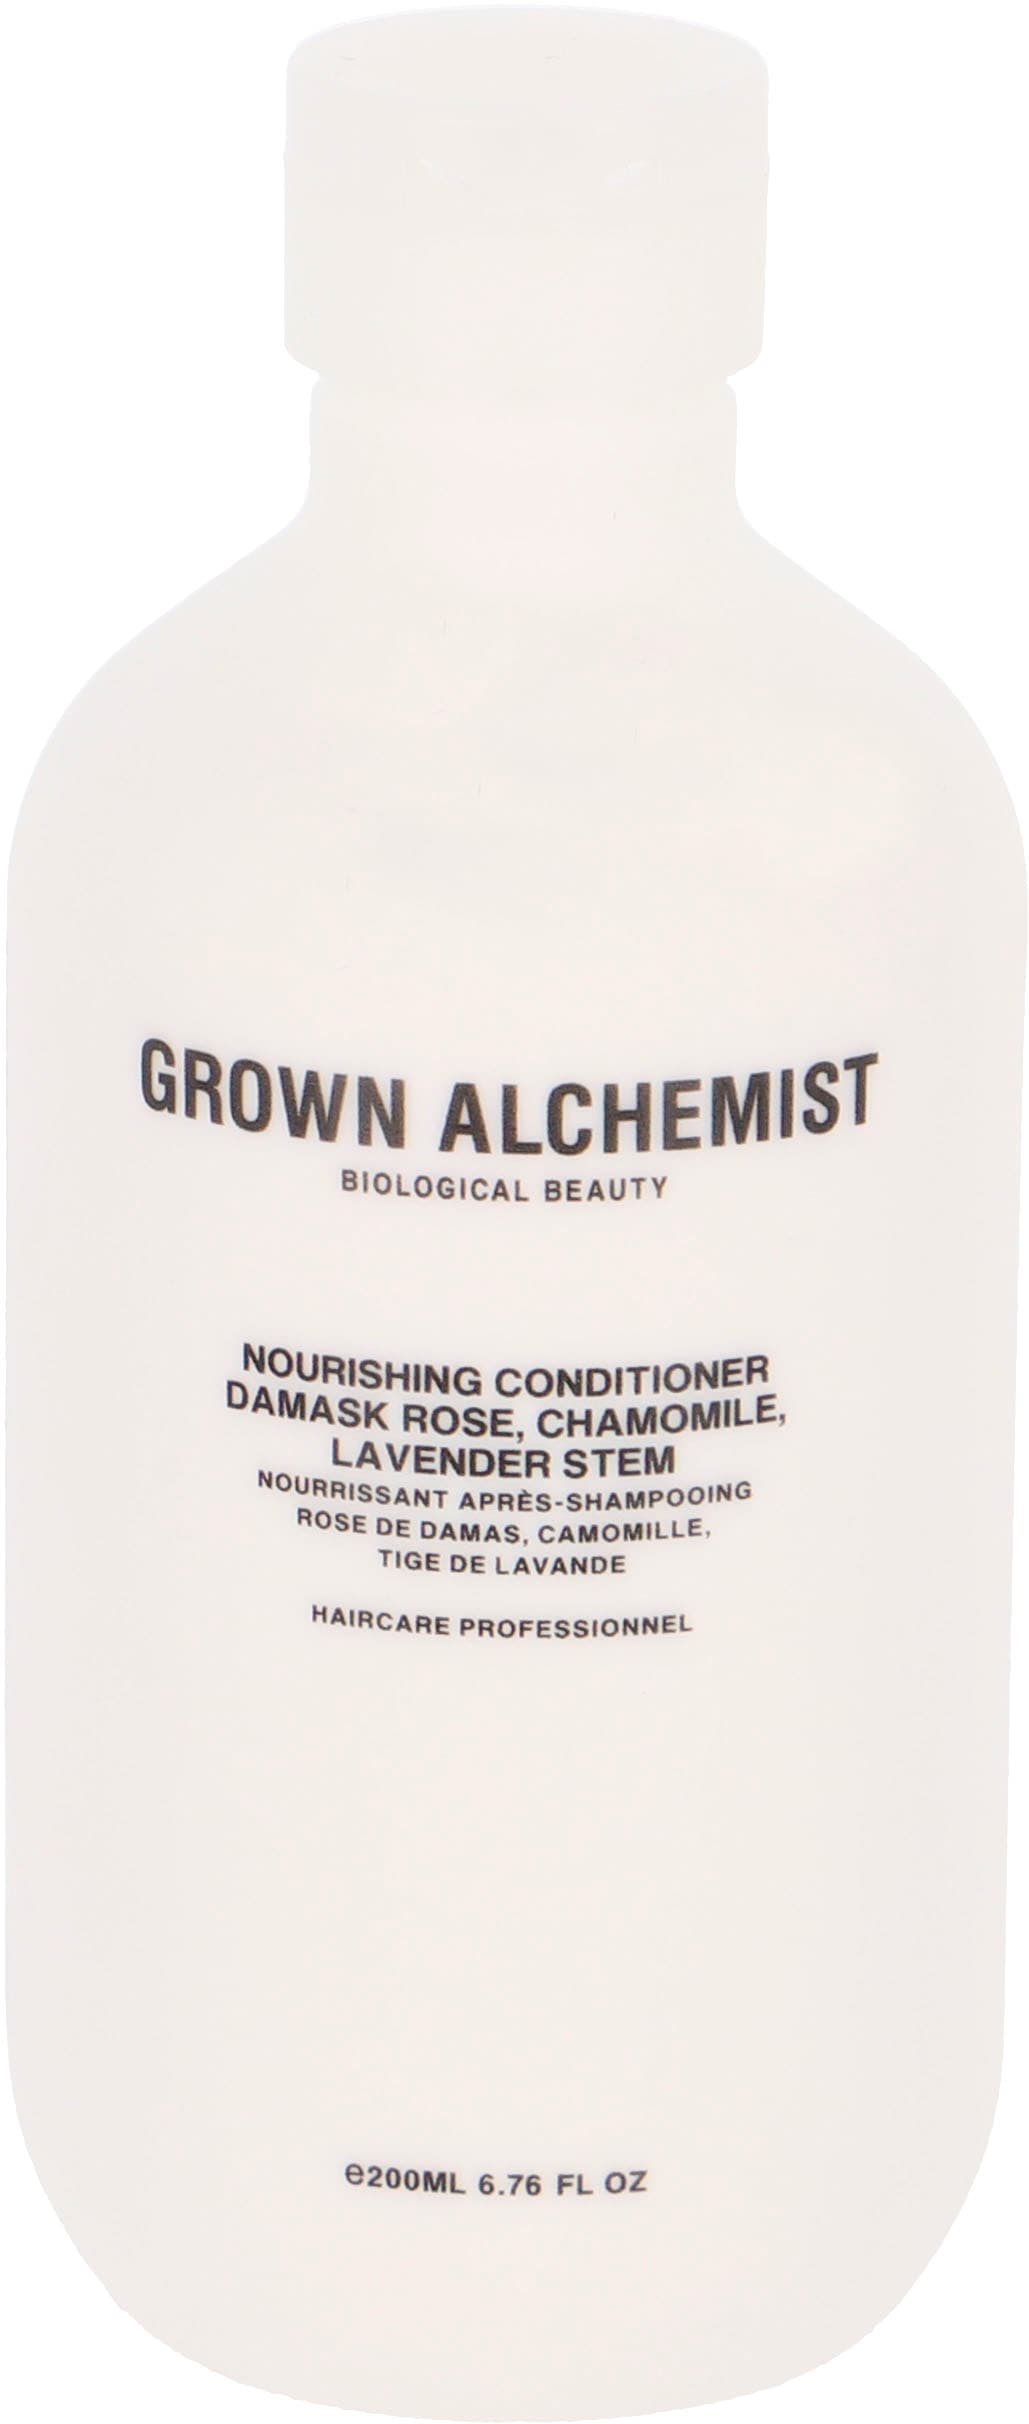 BAUR Black Rose, Stem Damask Conditioner Haarspülung GROWN Chamomile, ALCHEMIST | 0.6«, Lavender Friday - »Nourishing